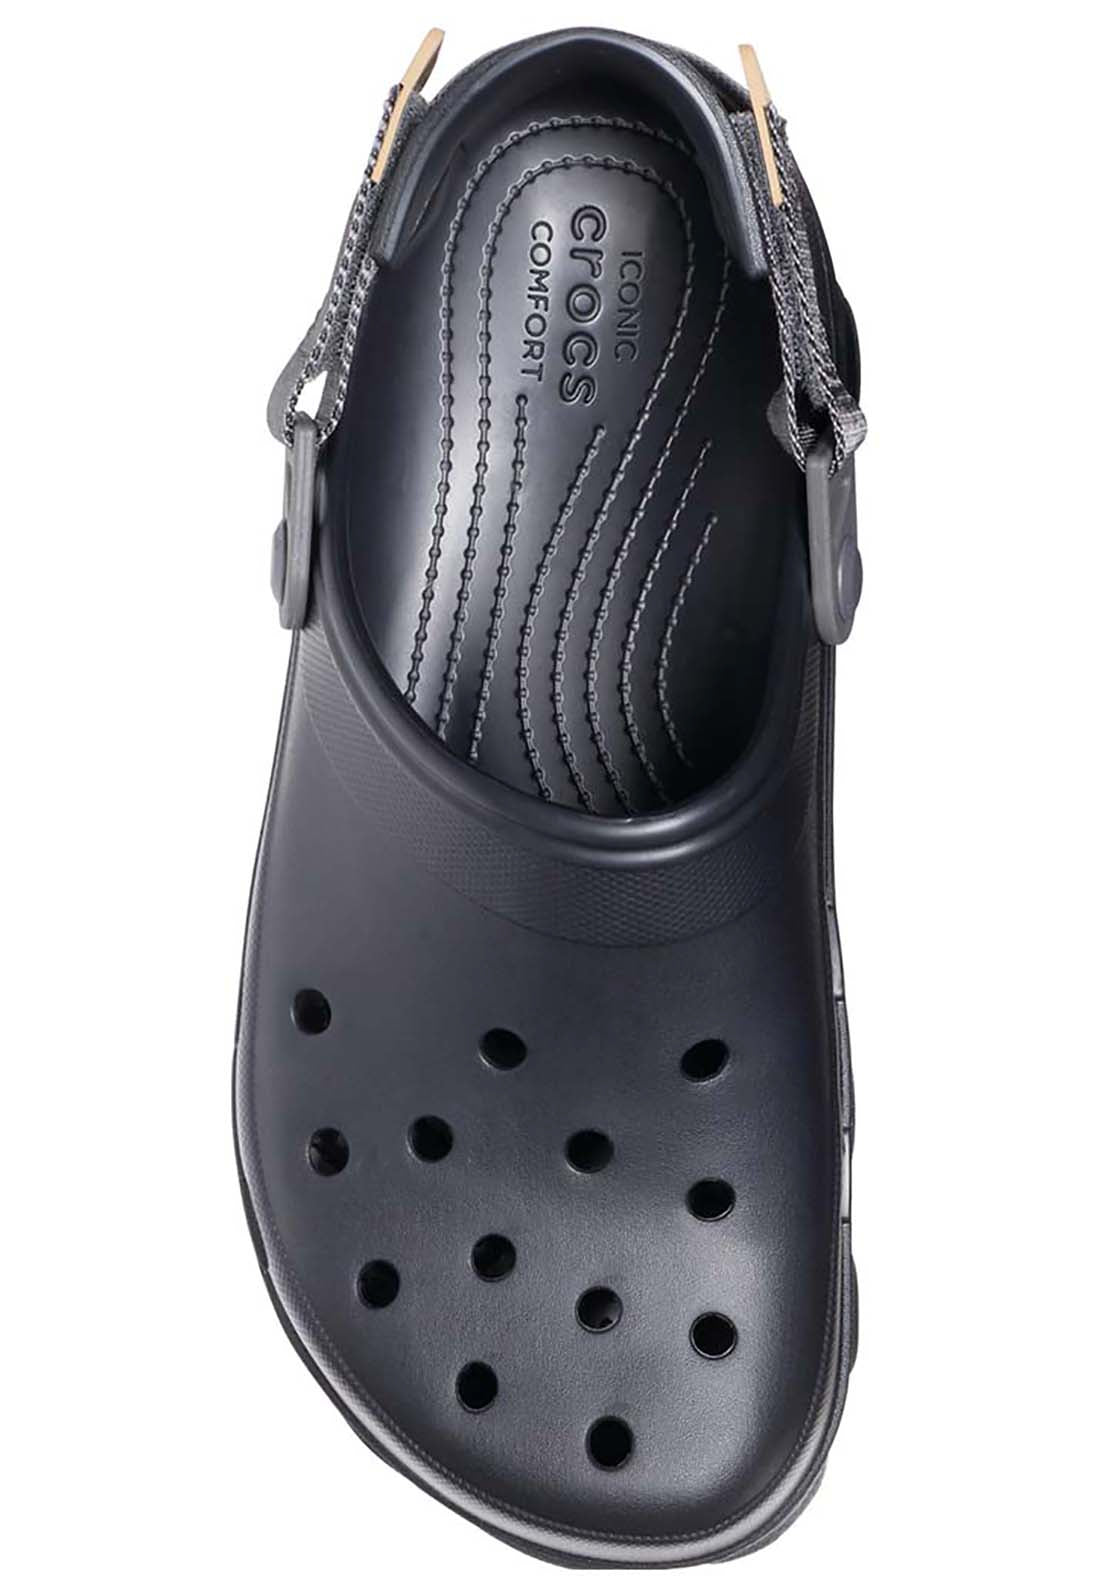 Crocs All Terrain Clog - Black 5 Shaws Department Stores